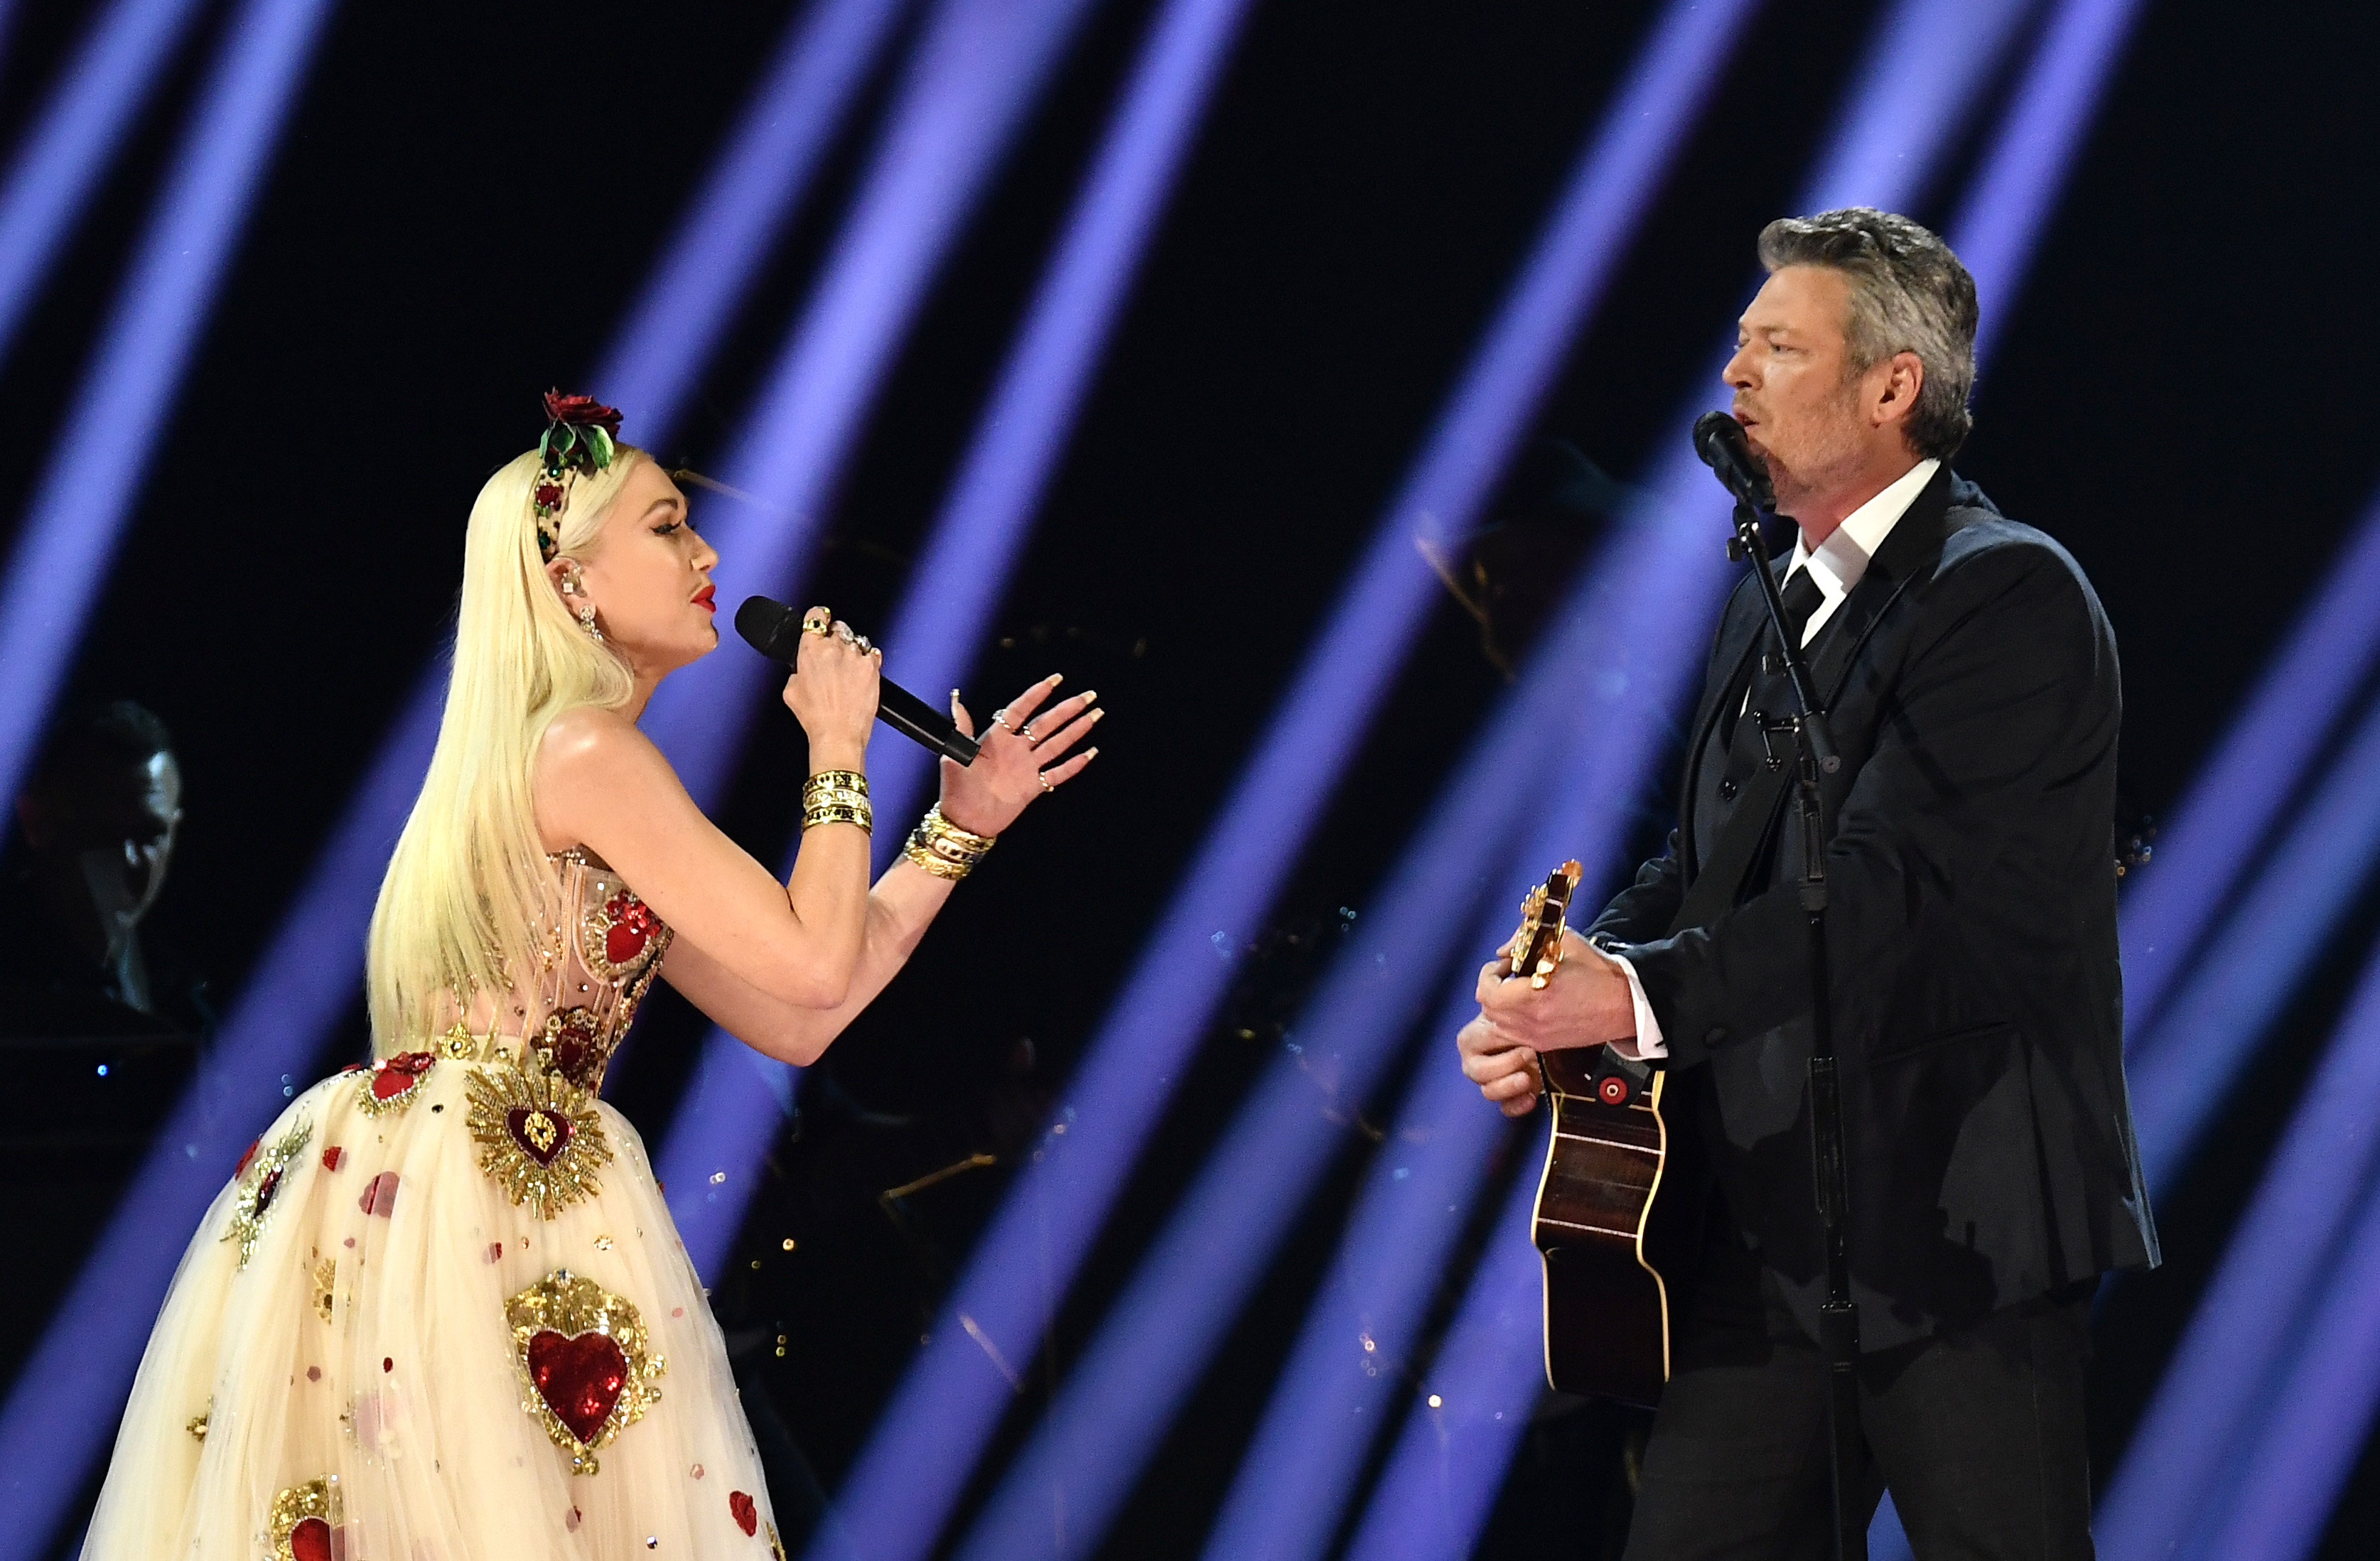 Grammys 2020: Gwen Stefani, Blake Shelton Sing ‘Nobody But You'